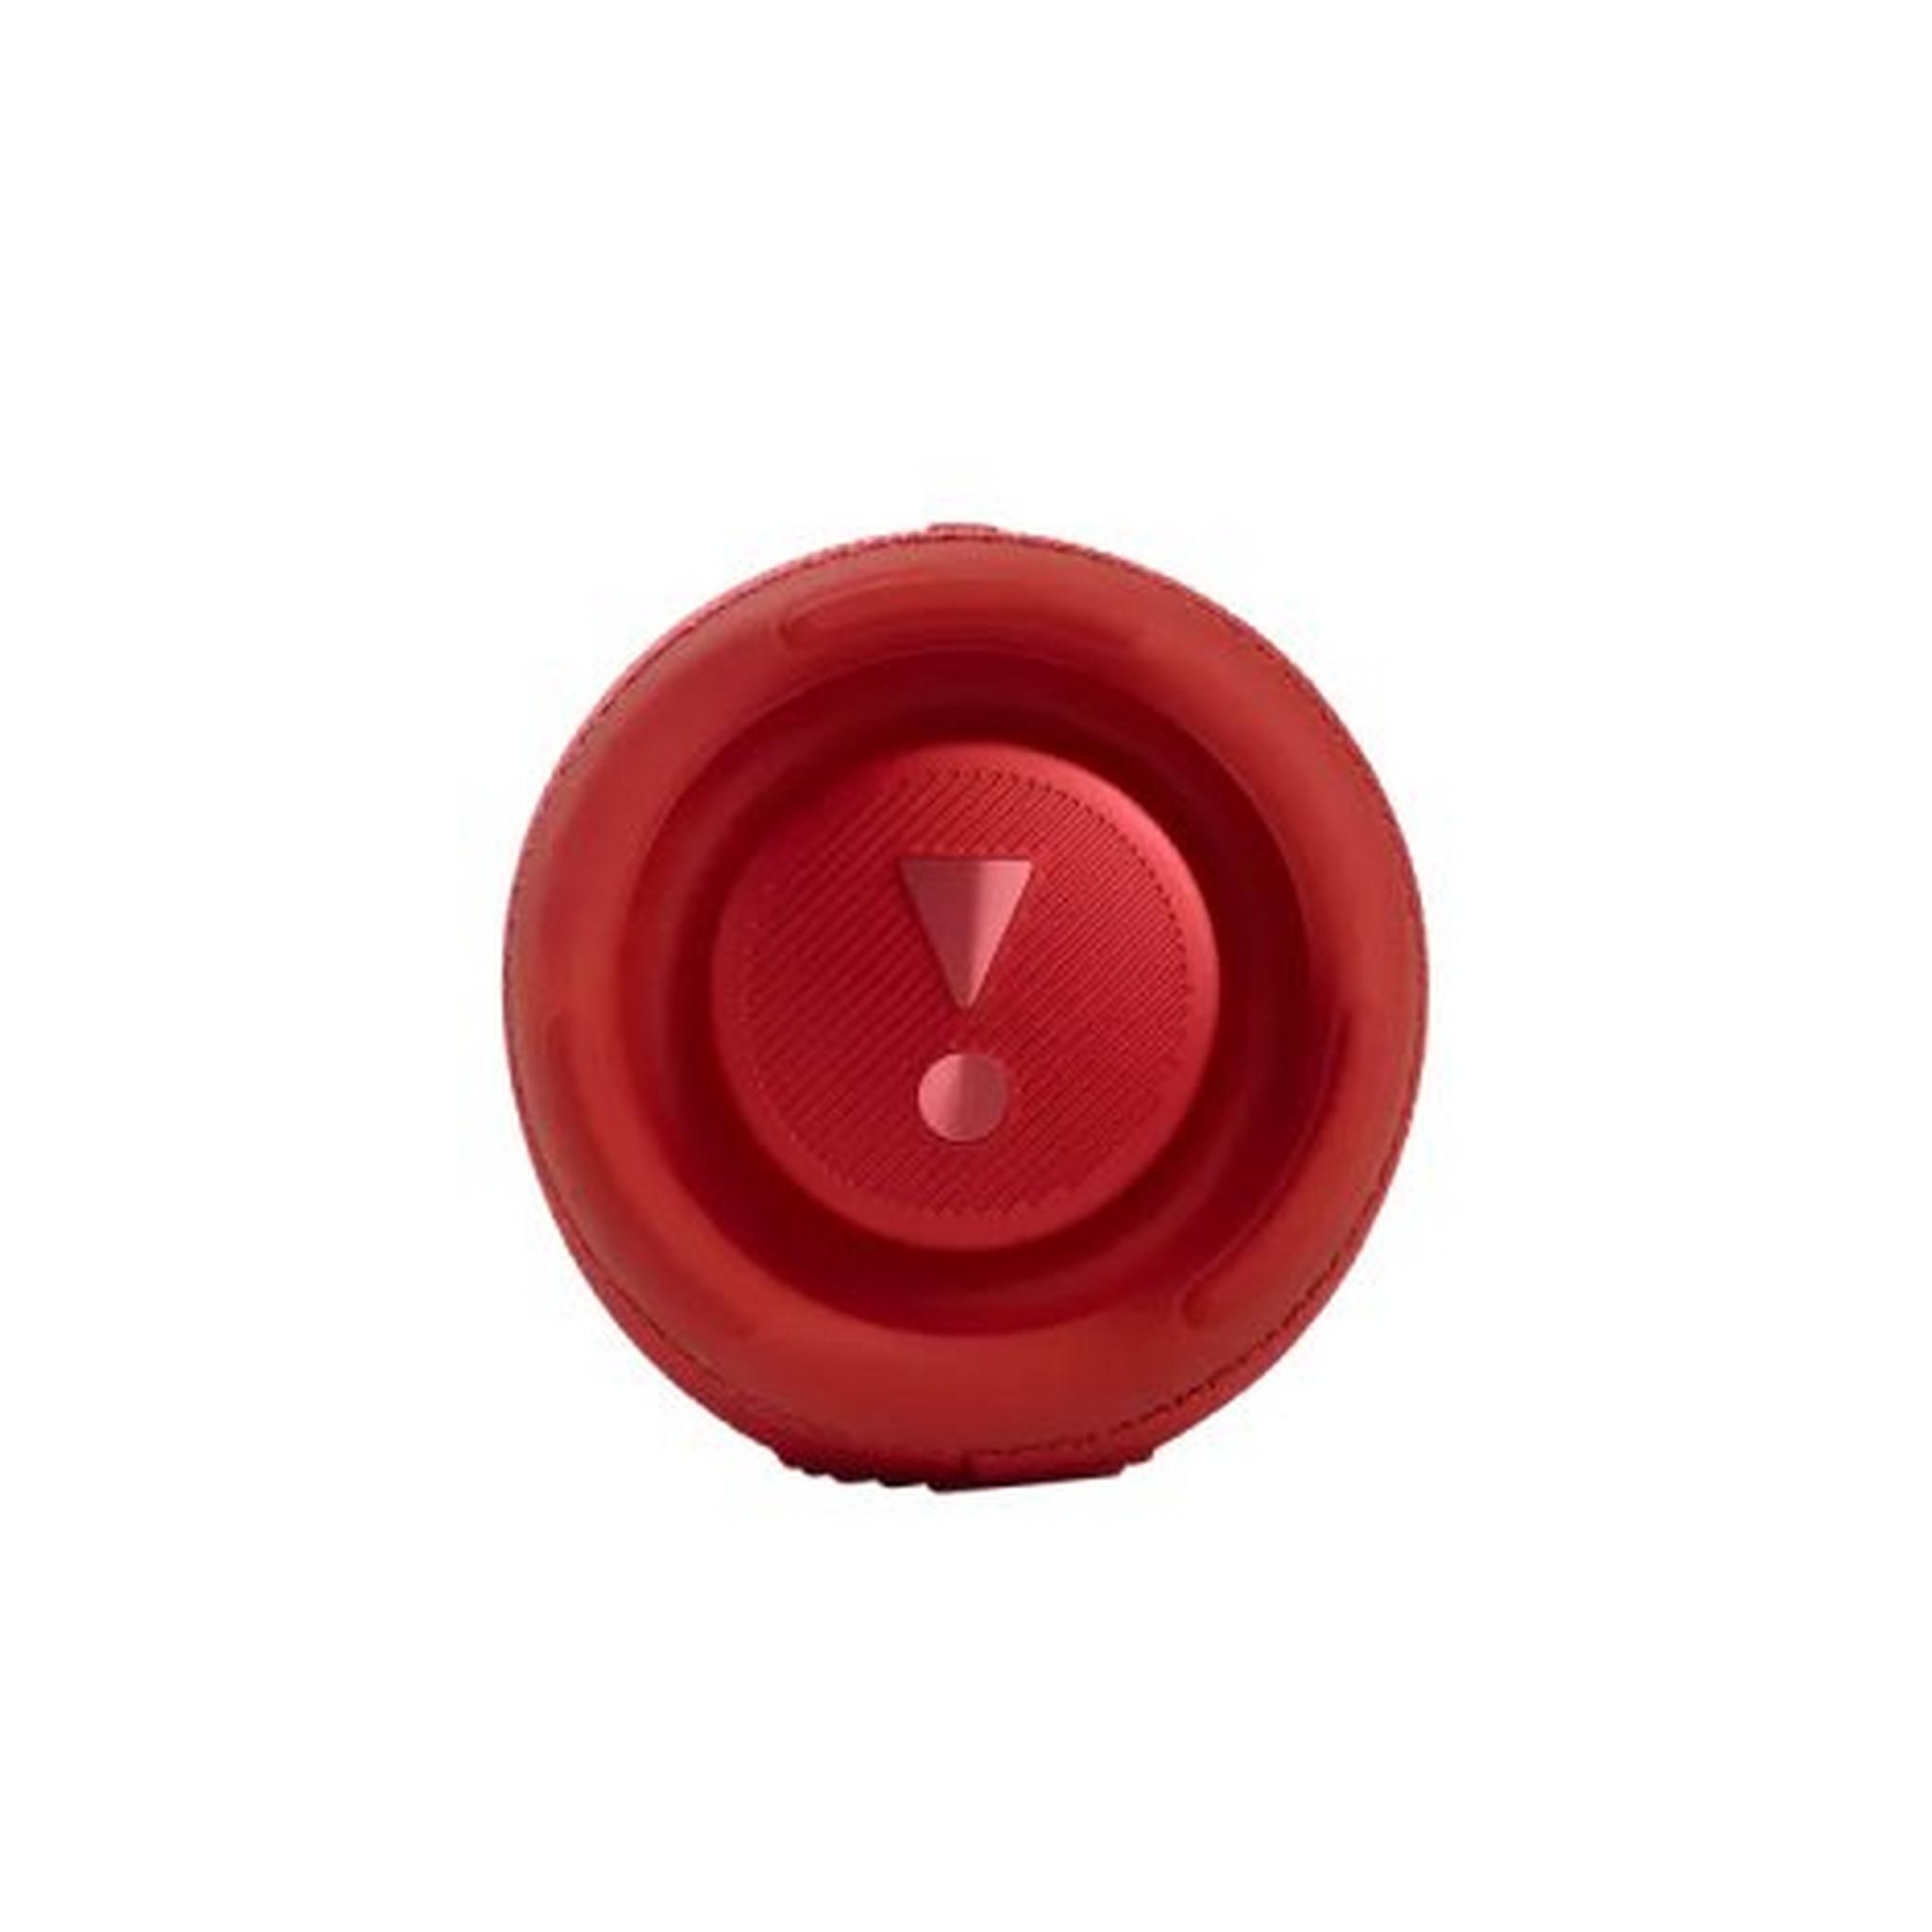 JBL Charge 5 Waterproof Wireless Speaker, JBLCHARGE5RED - Red